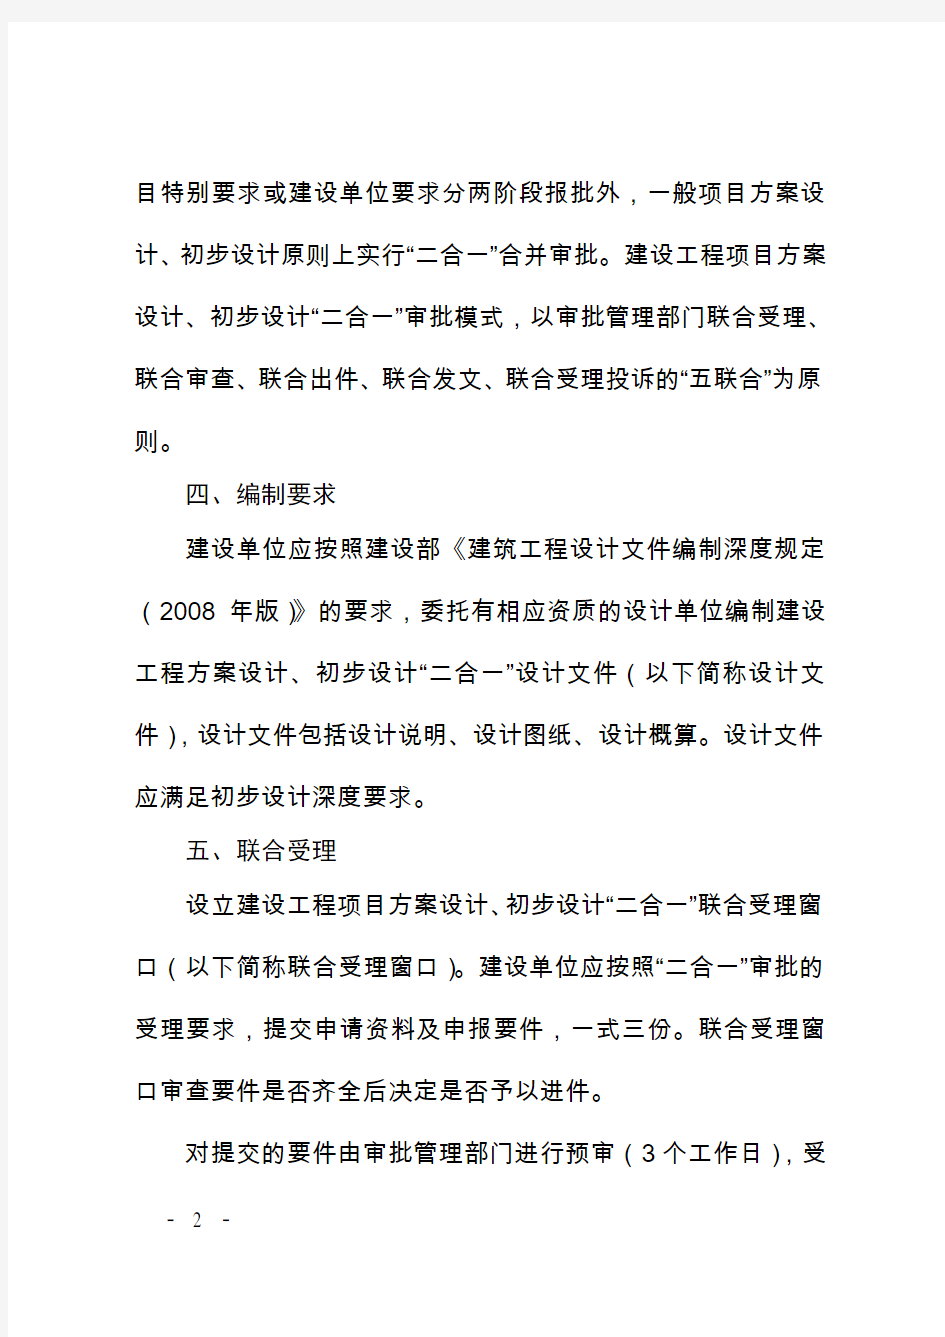 《杭州市建设工程项目方案设计、初步设计“二合一”审批实施办法(试行)